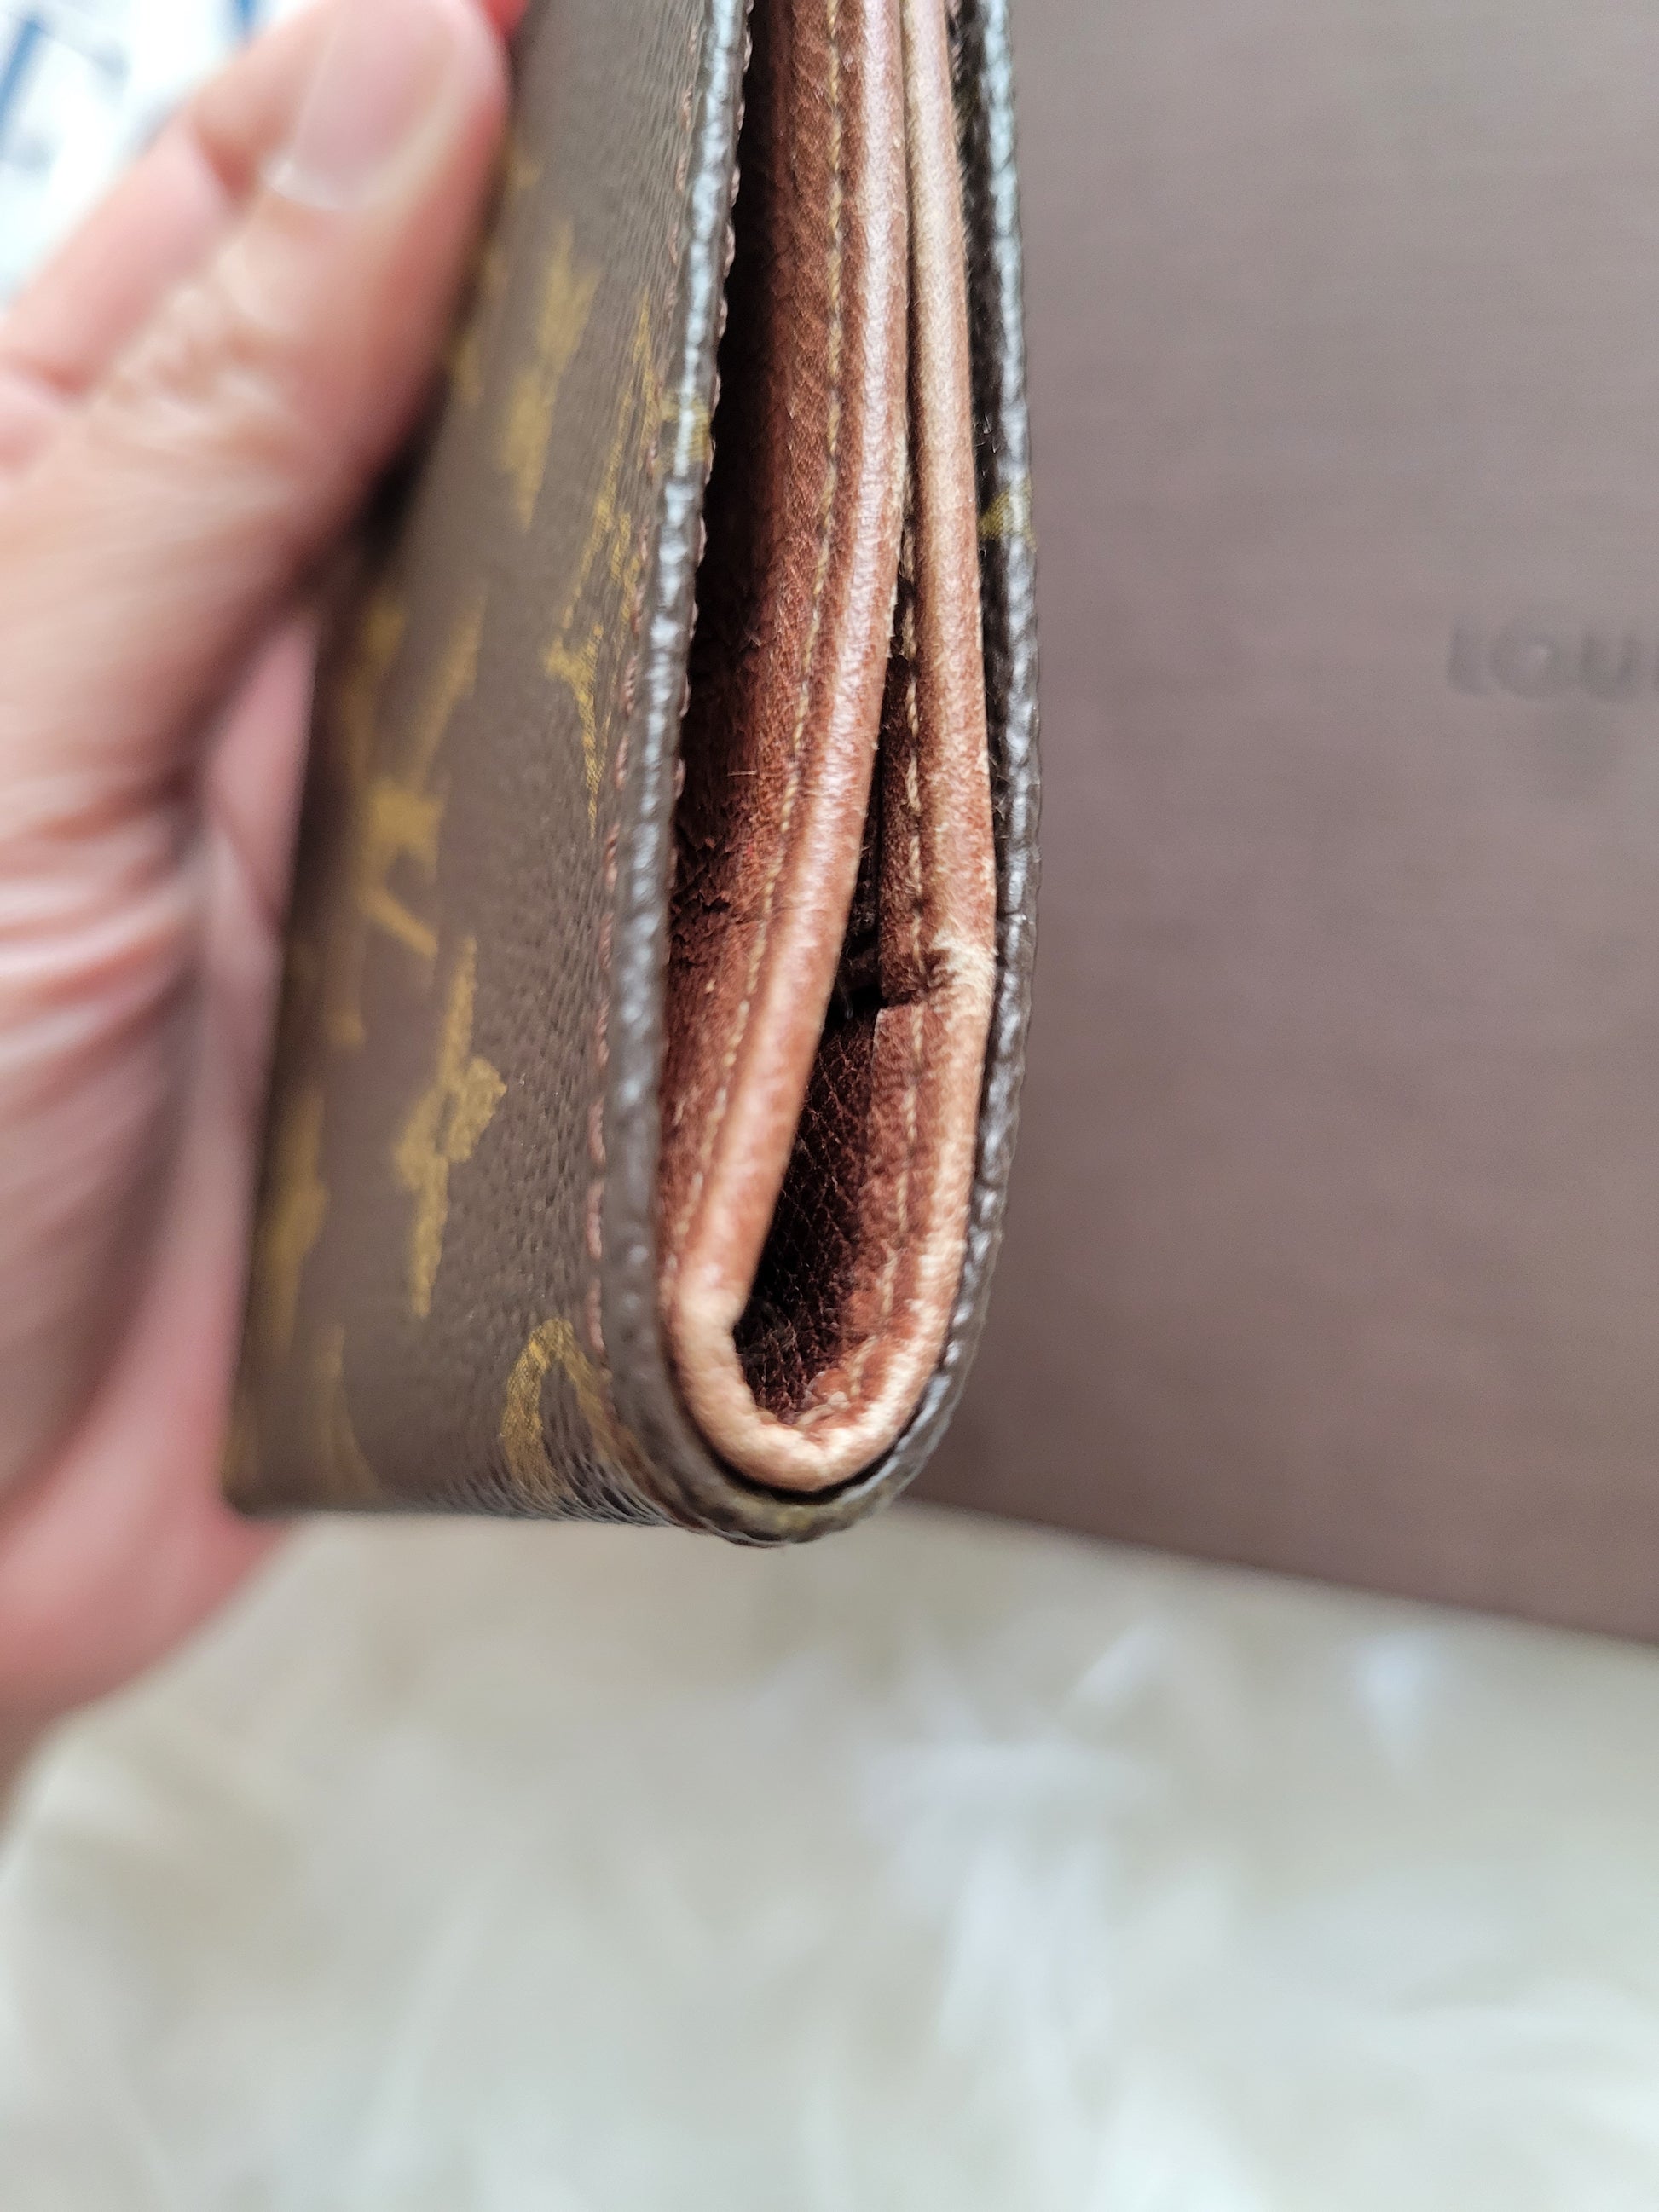 Louis Vuitton Monogram Men's Slim Compact Wallet – The Luxe Lion